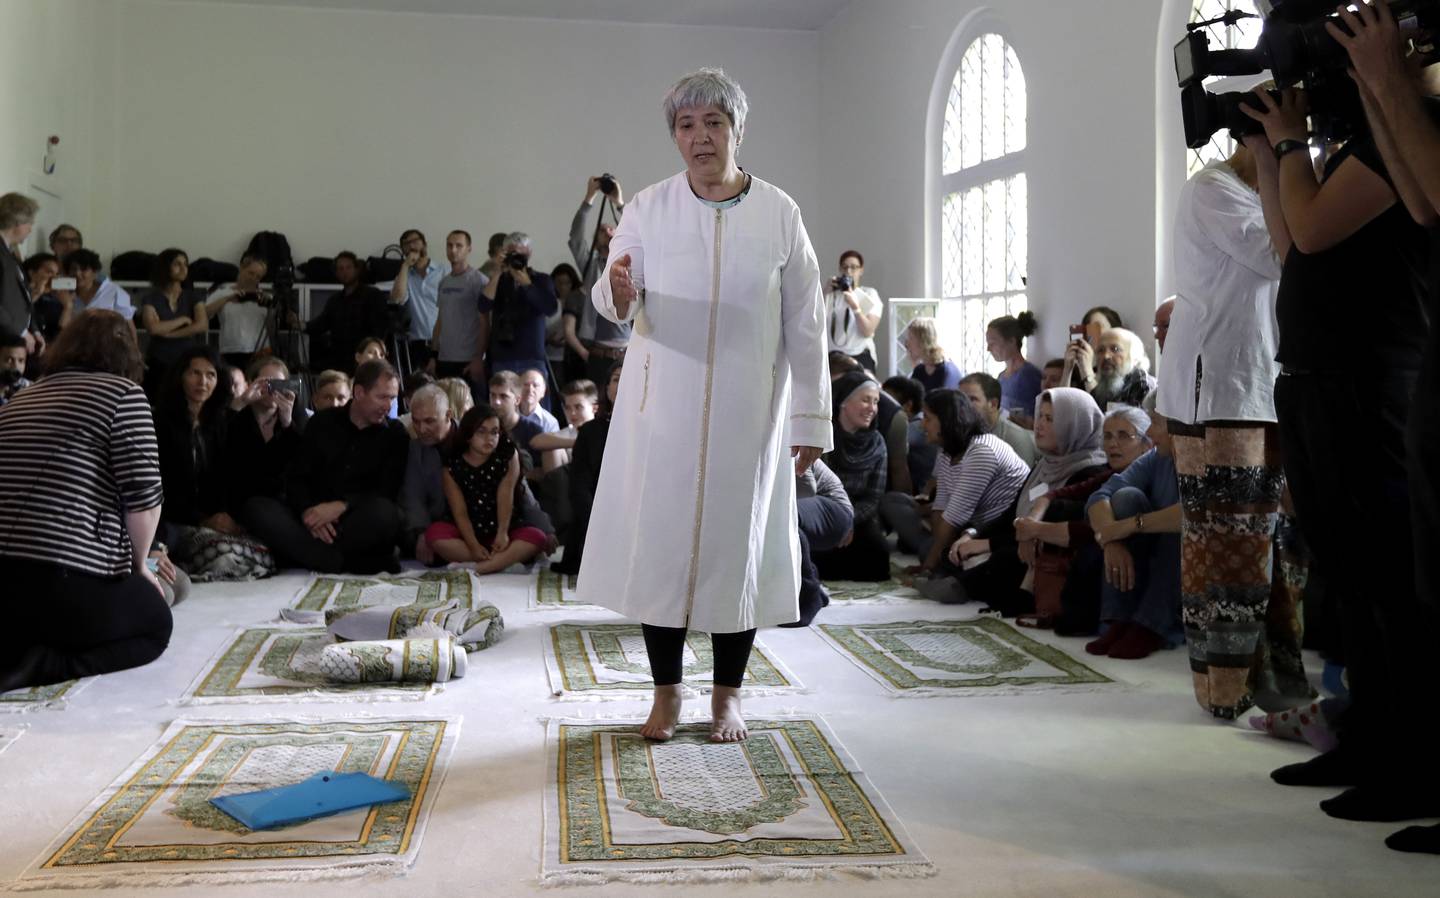 Seyran Ates, stående i midten, grunnlegger av Ibn-Rushd-Goethe-moskeen, gestikulerer under åpningen av moskeen i Berlin, Tyskland, fredag 16. juni 2017. Ates, 54 år gammel datter av tyrkiske innvandrere, har grunnlagt den første liberale moskeen i Tyskland der menn og kvinner kan be sammen, homofile er velkomne og muslimer fra alle sekter kan legge sine indre religiøse konflikter bak seg.